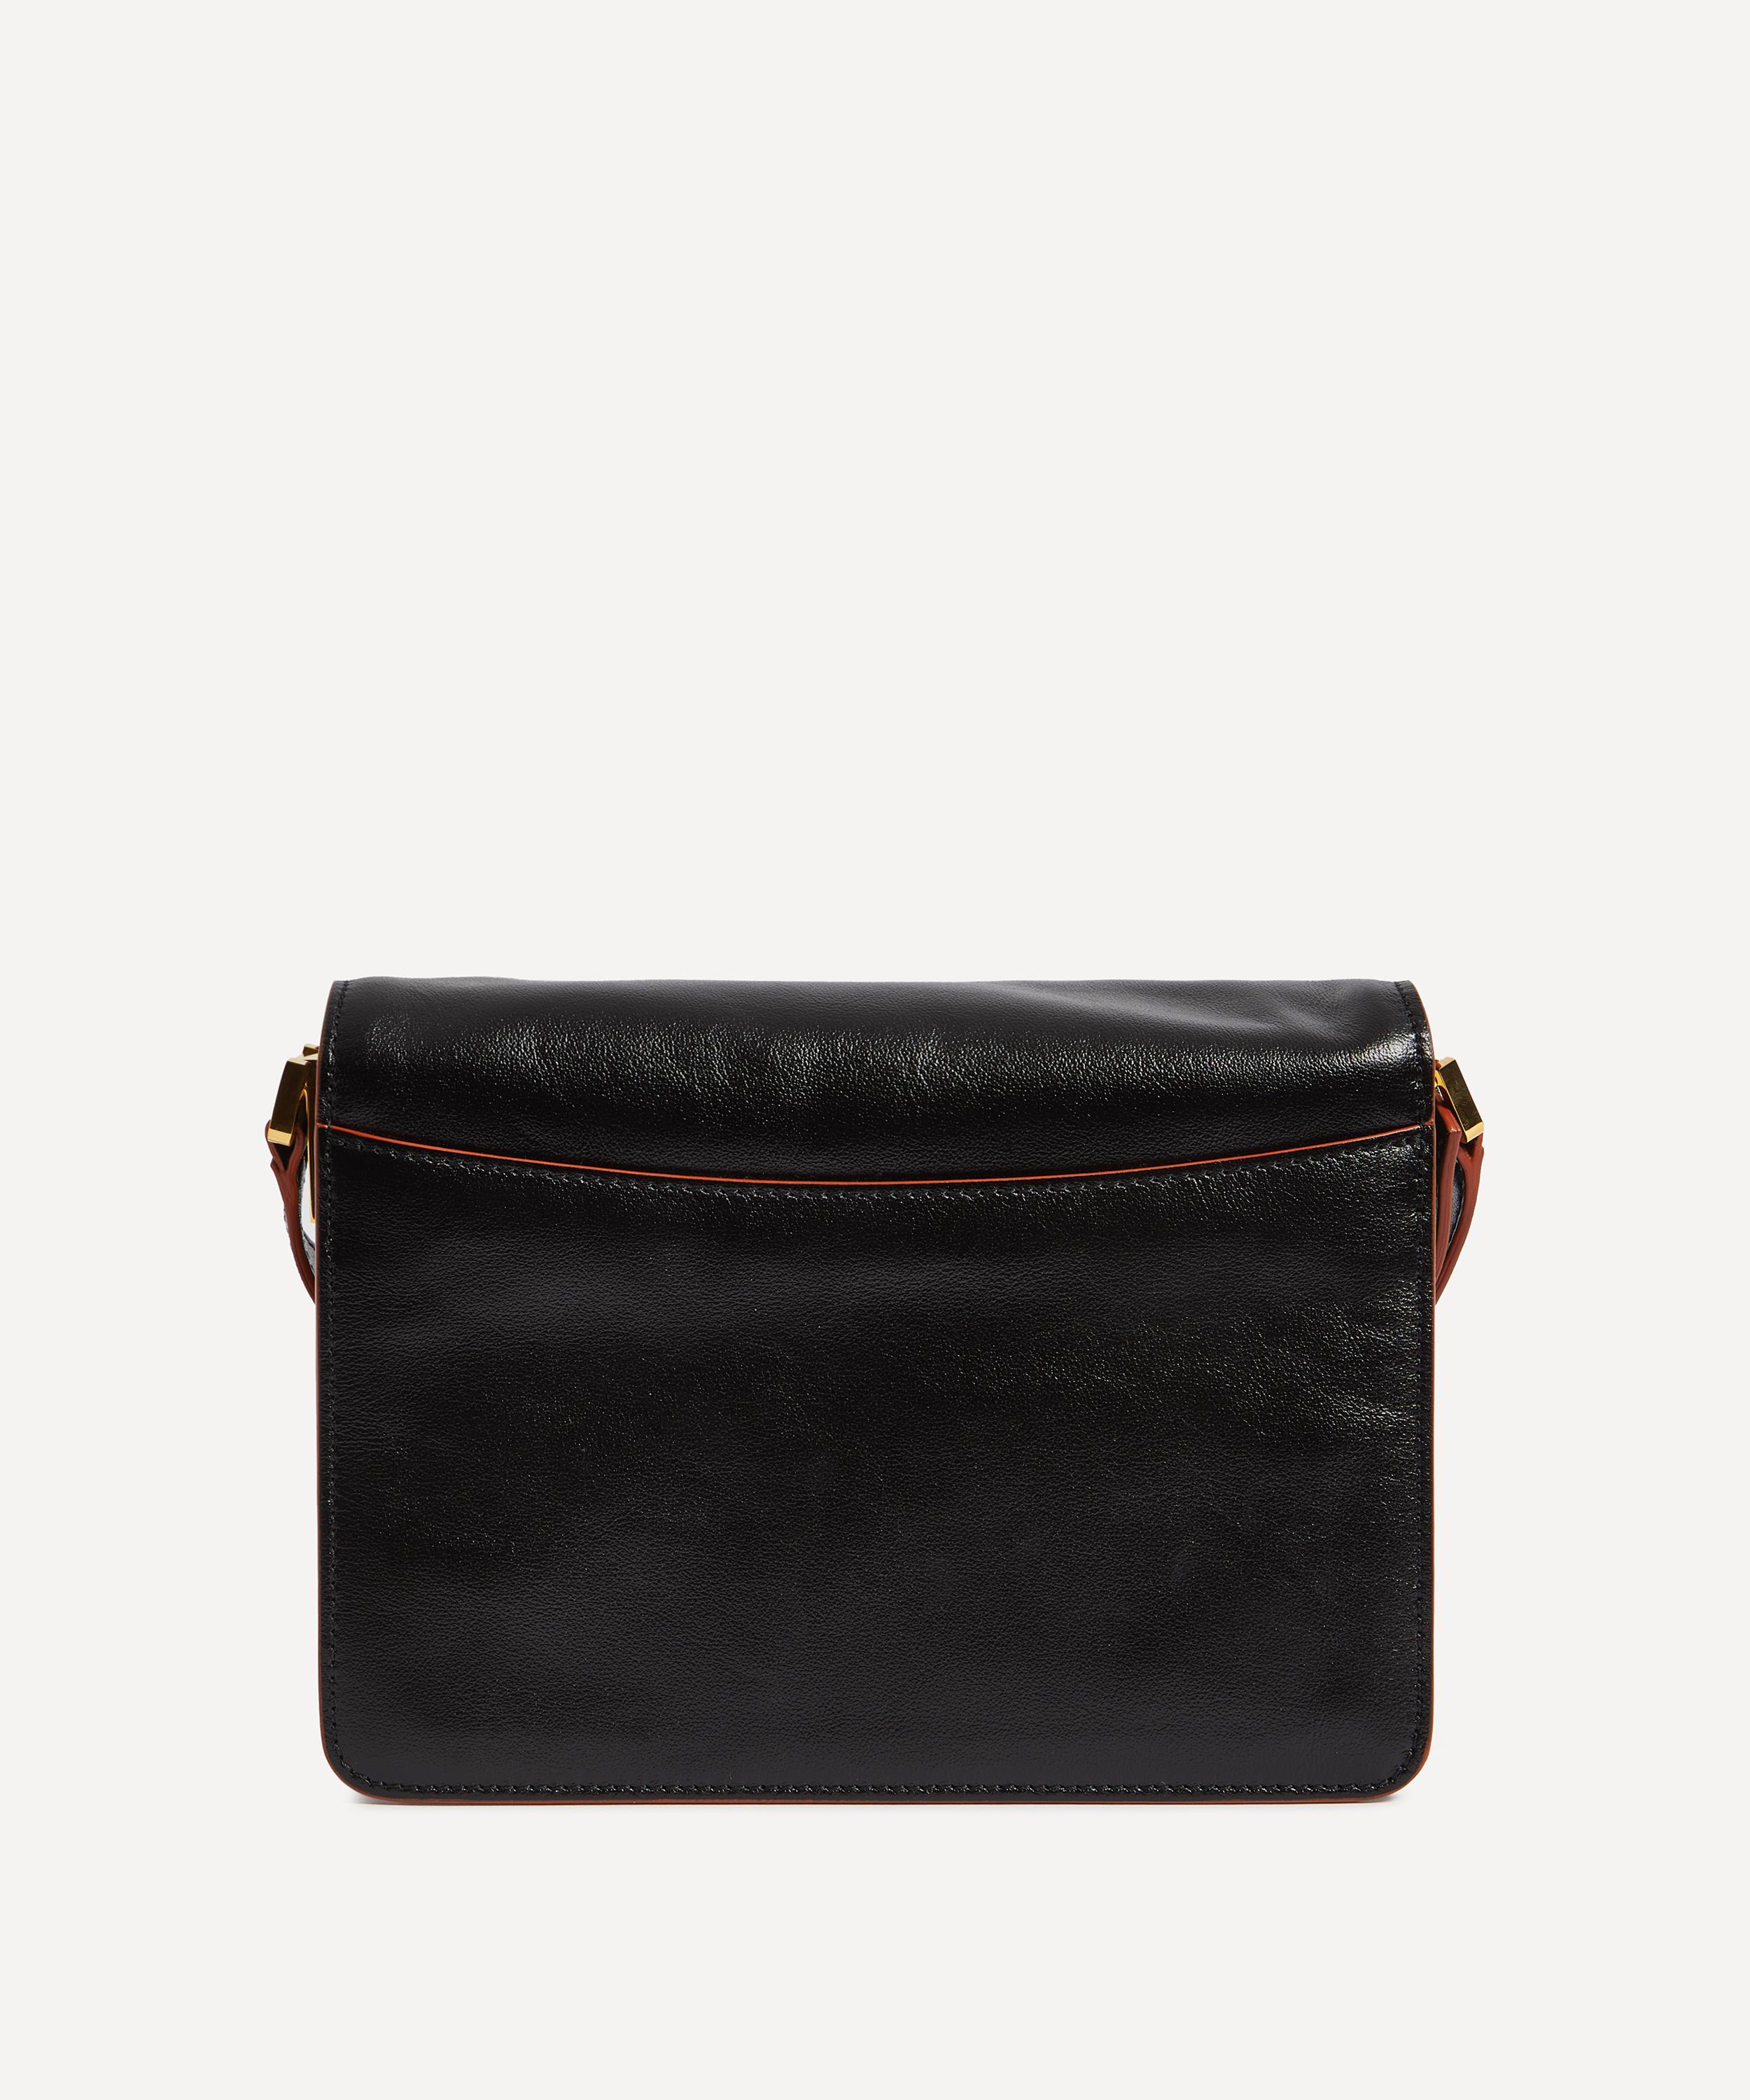 Marni leather shoulder bags - Black